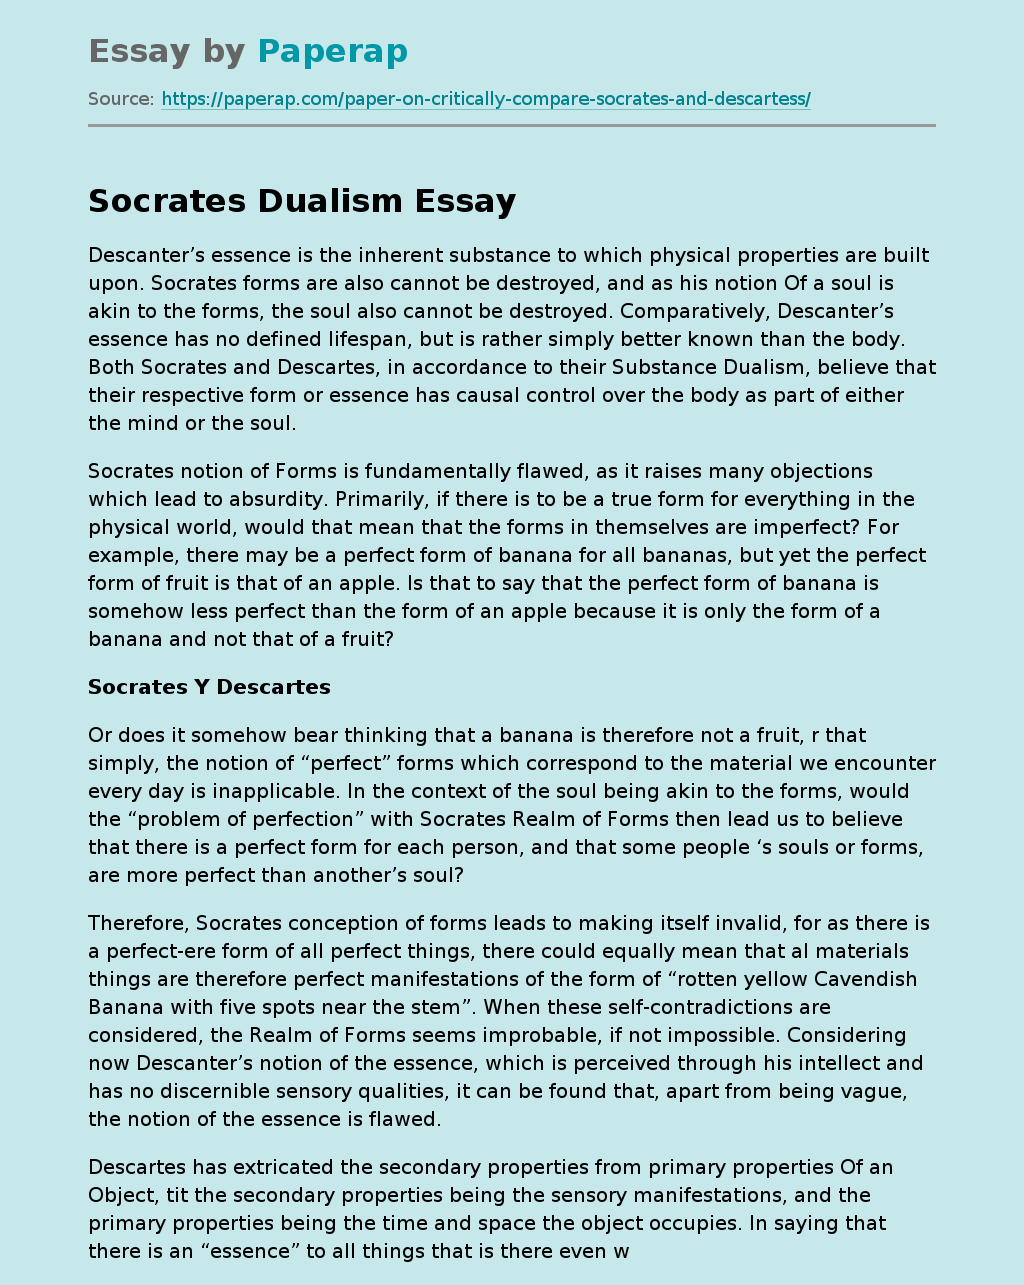 Socrates Dualism